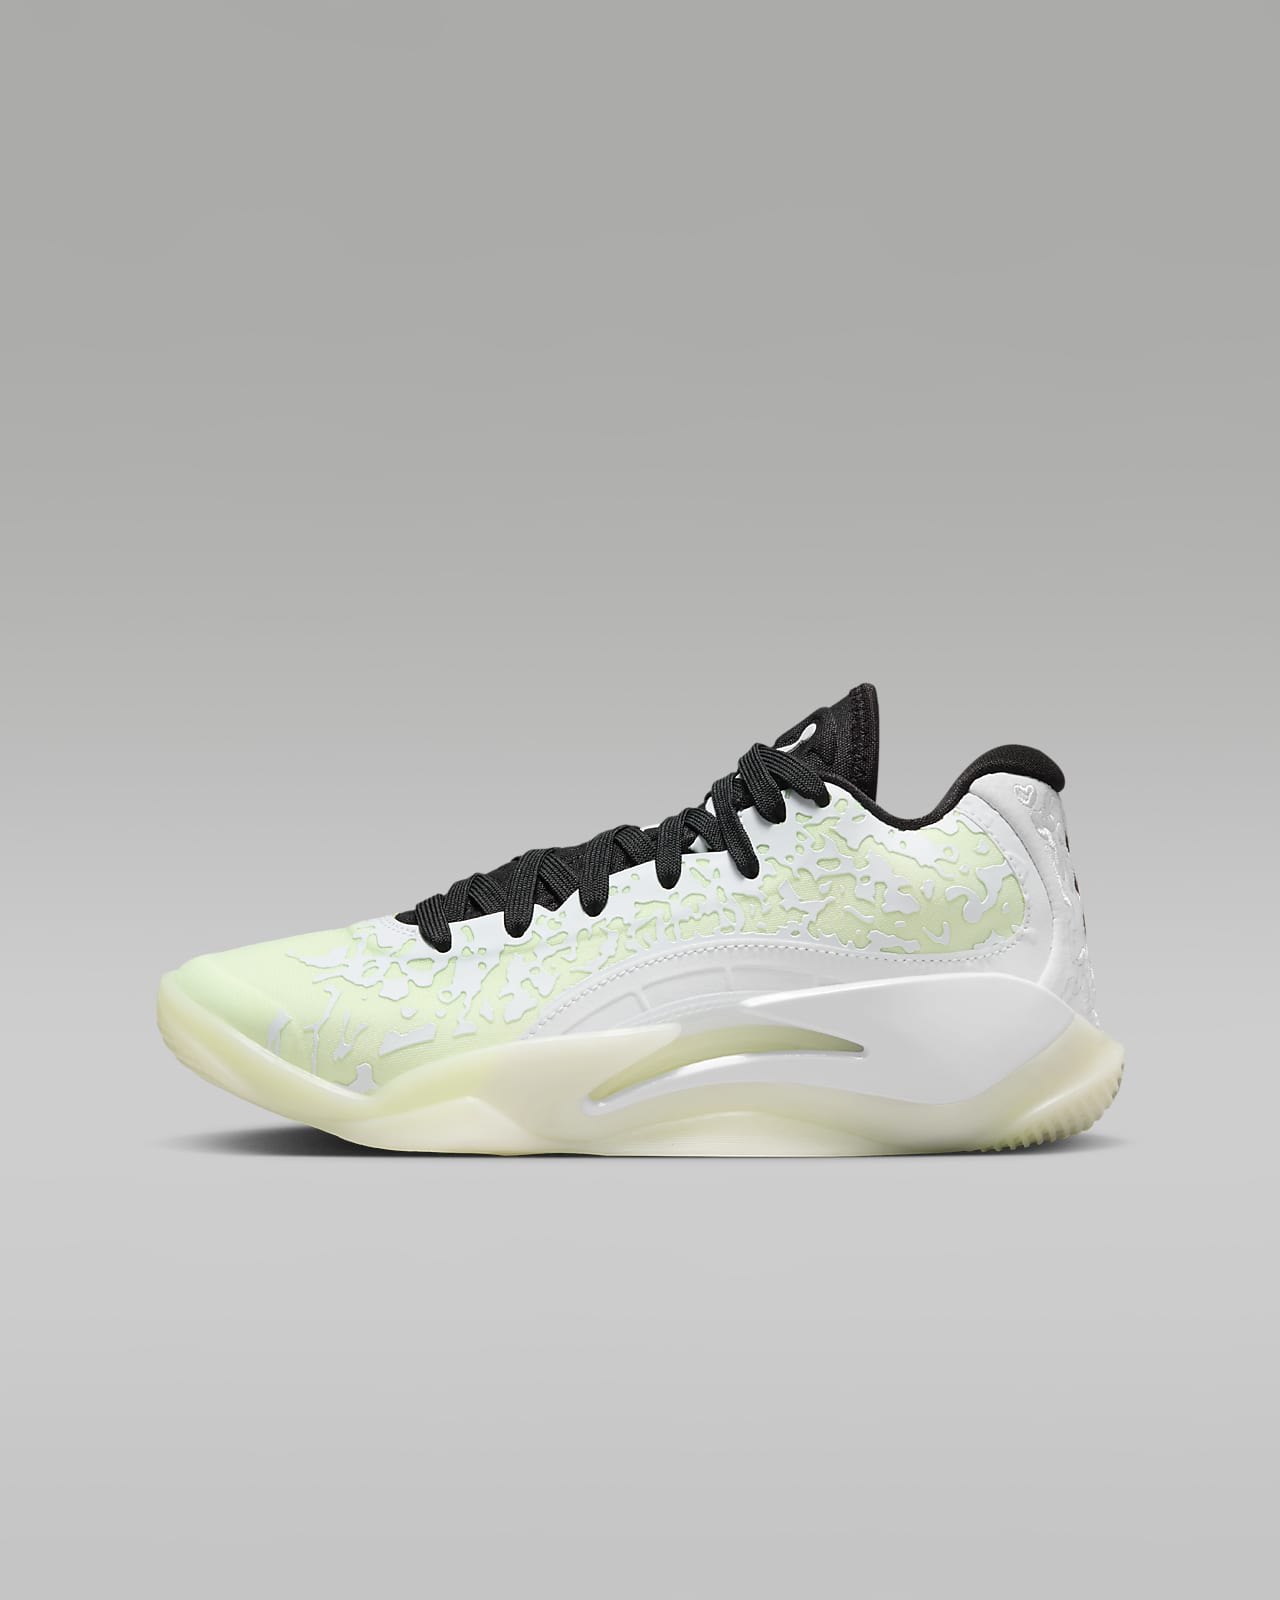 Nike Air Jordan Spizike Men's Basketball Sneakers 315371-006 | eBay